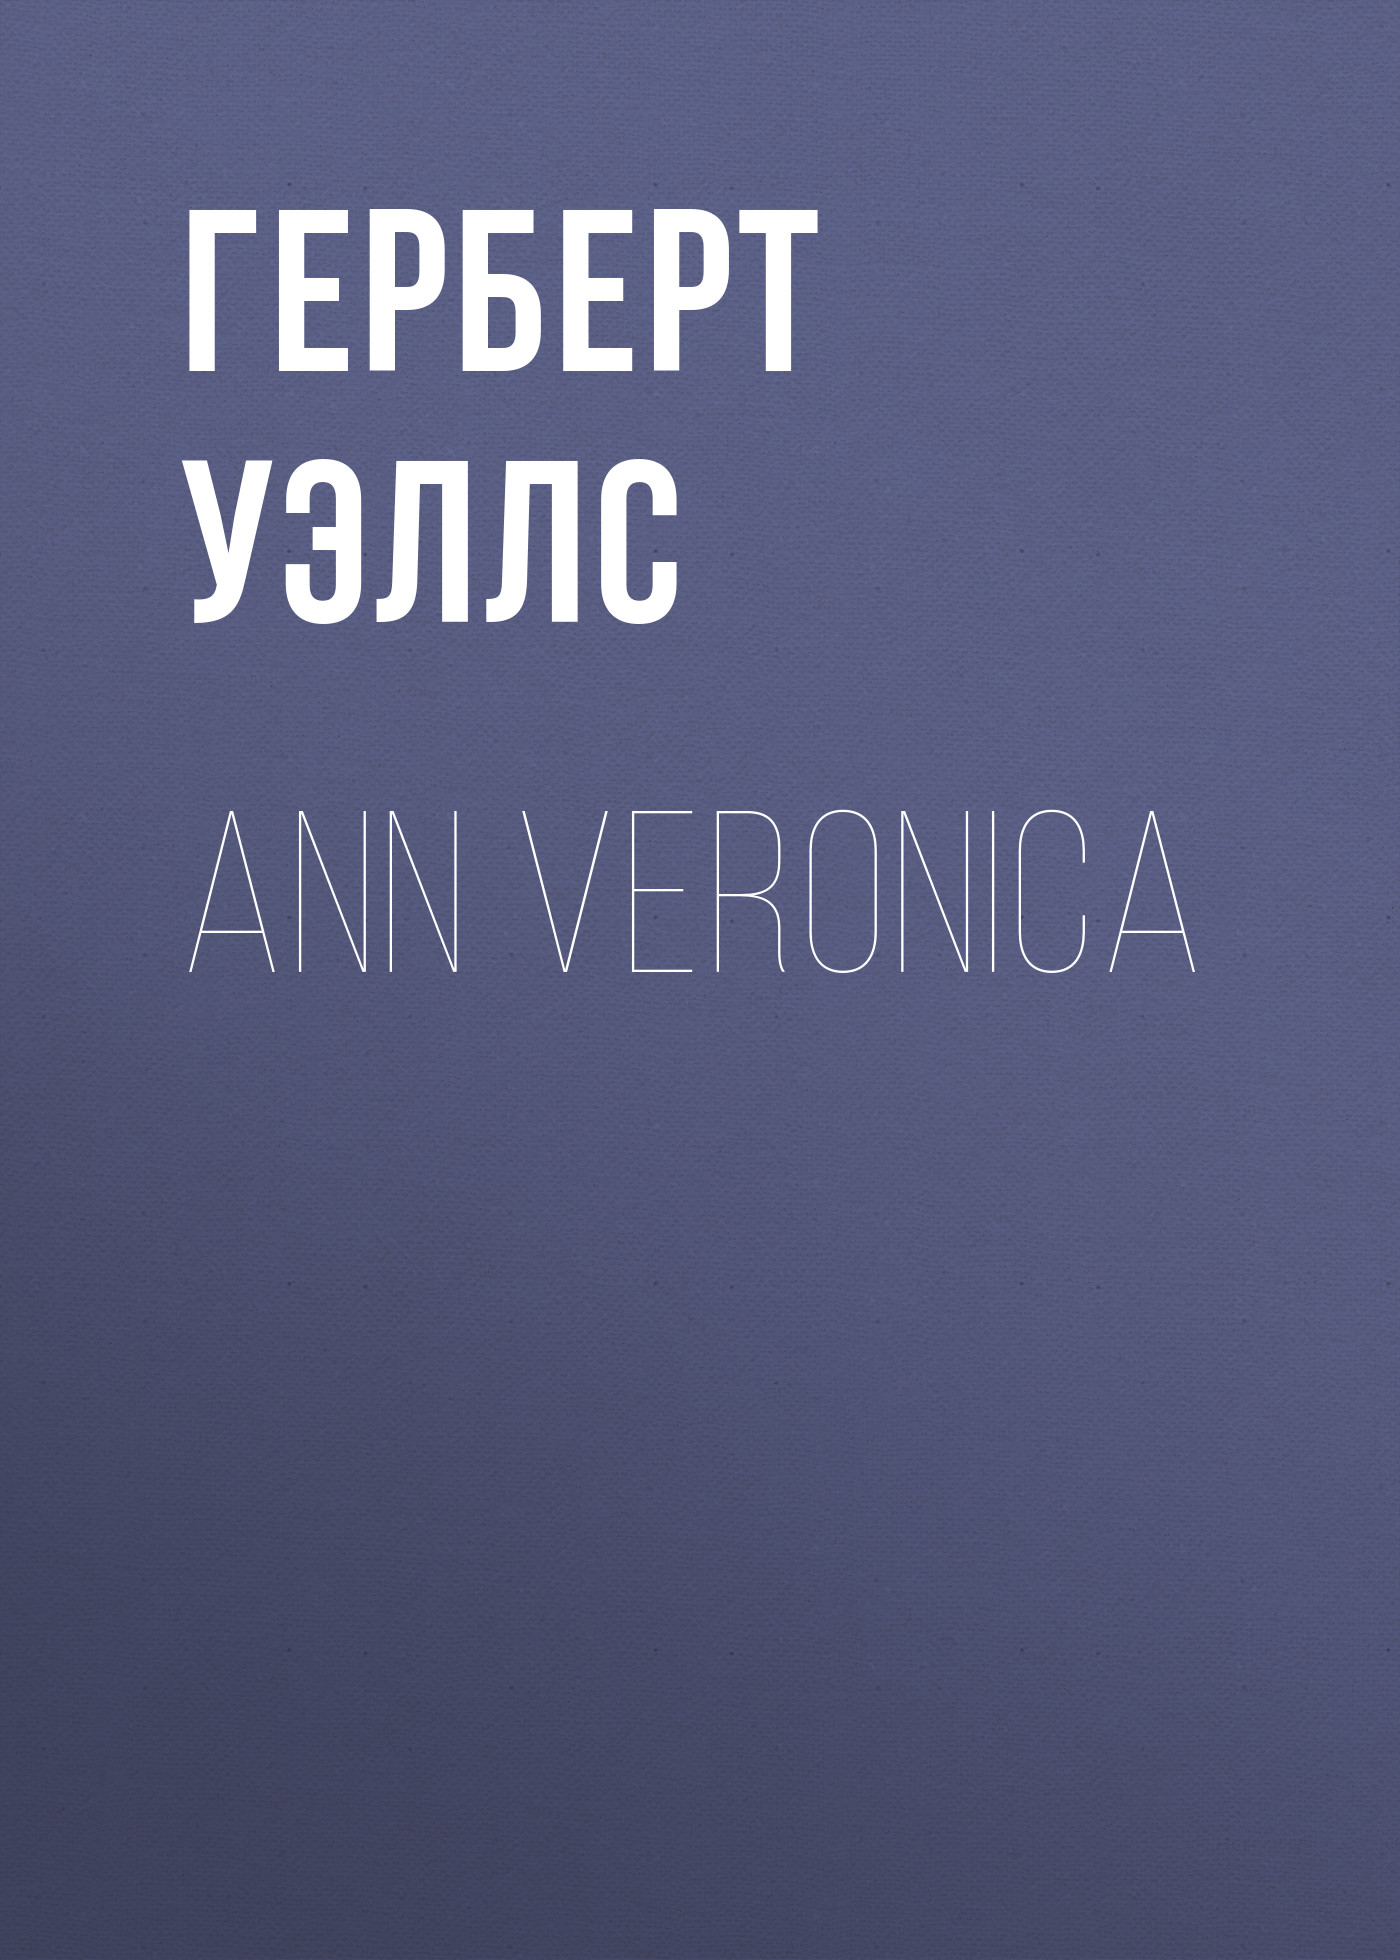 Книга Ann Veronica из серии , созданная Герберт Уэллс, может относится к жанру Зарубежная классика, Зарубежные любовные романы. Стоимость электронной книги Ann Veronica с идентификатором 25560324 составляет 0 руб.